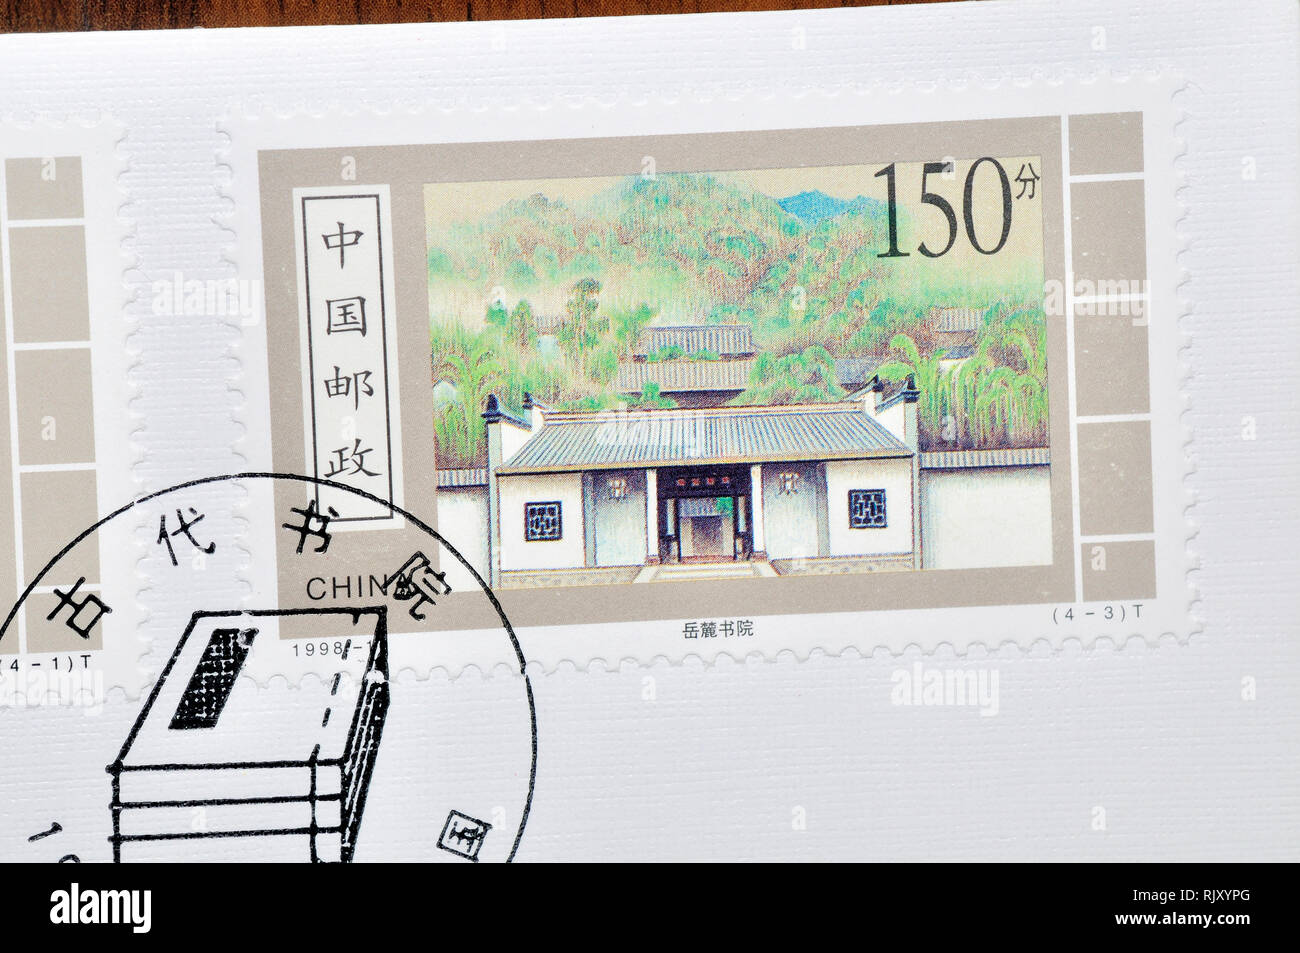 CHINA - CIRCA 1998: A stamp printed in China shows 1998-10 Ancient Academies, circa 1998 Stock Photo